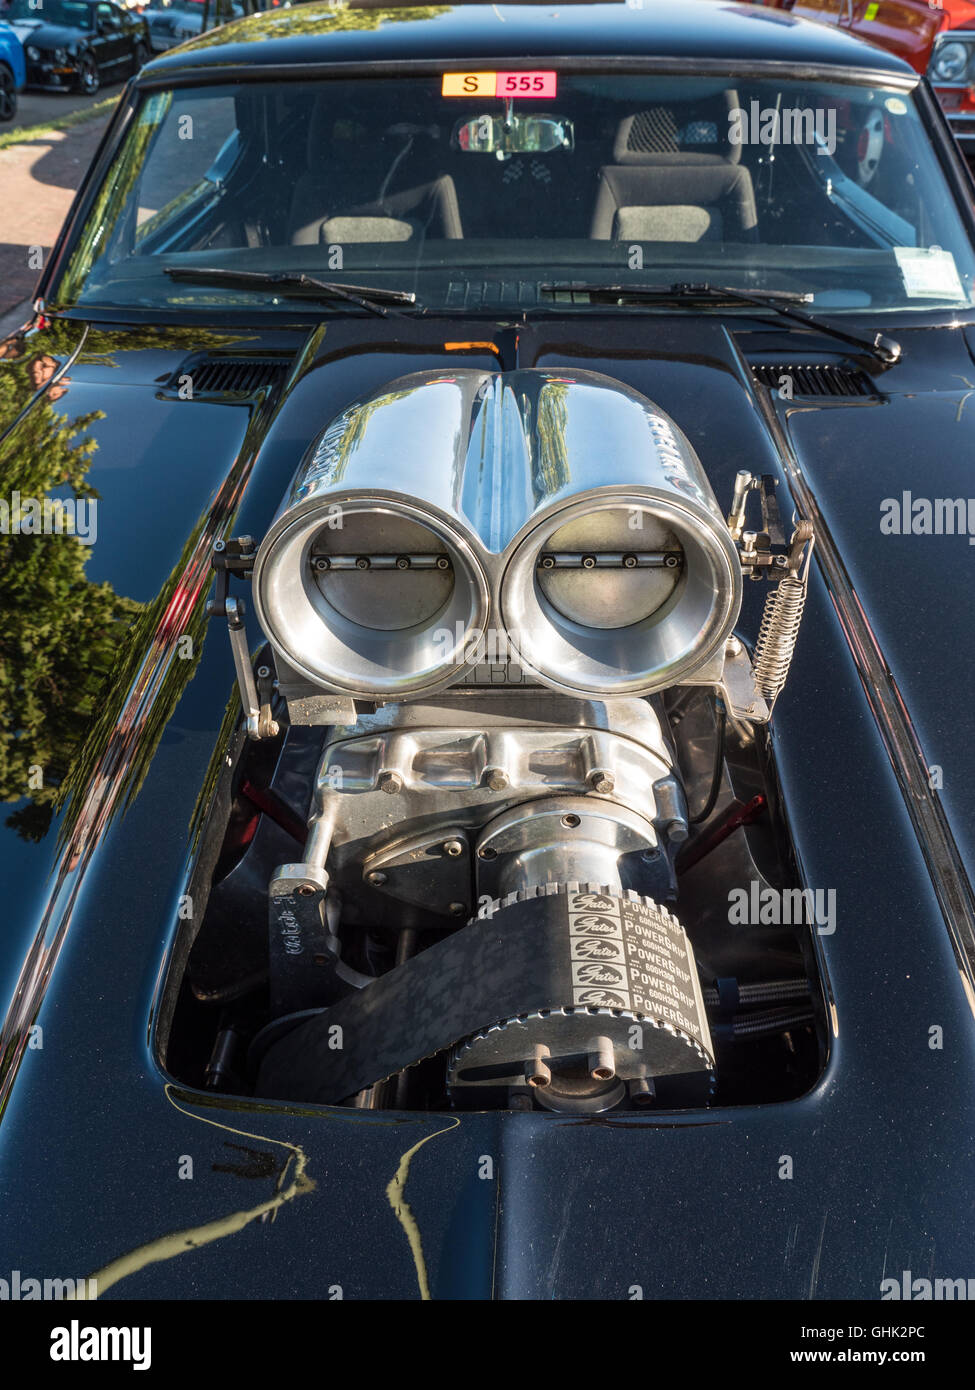 https://c8.alamy.com/compde/ghk2pc/amerikanisches-auto-kompressor-lufteinlass-am-americarna-classic-car-show-inglewood-neuseeland-ghk2pc.jpg